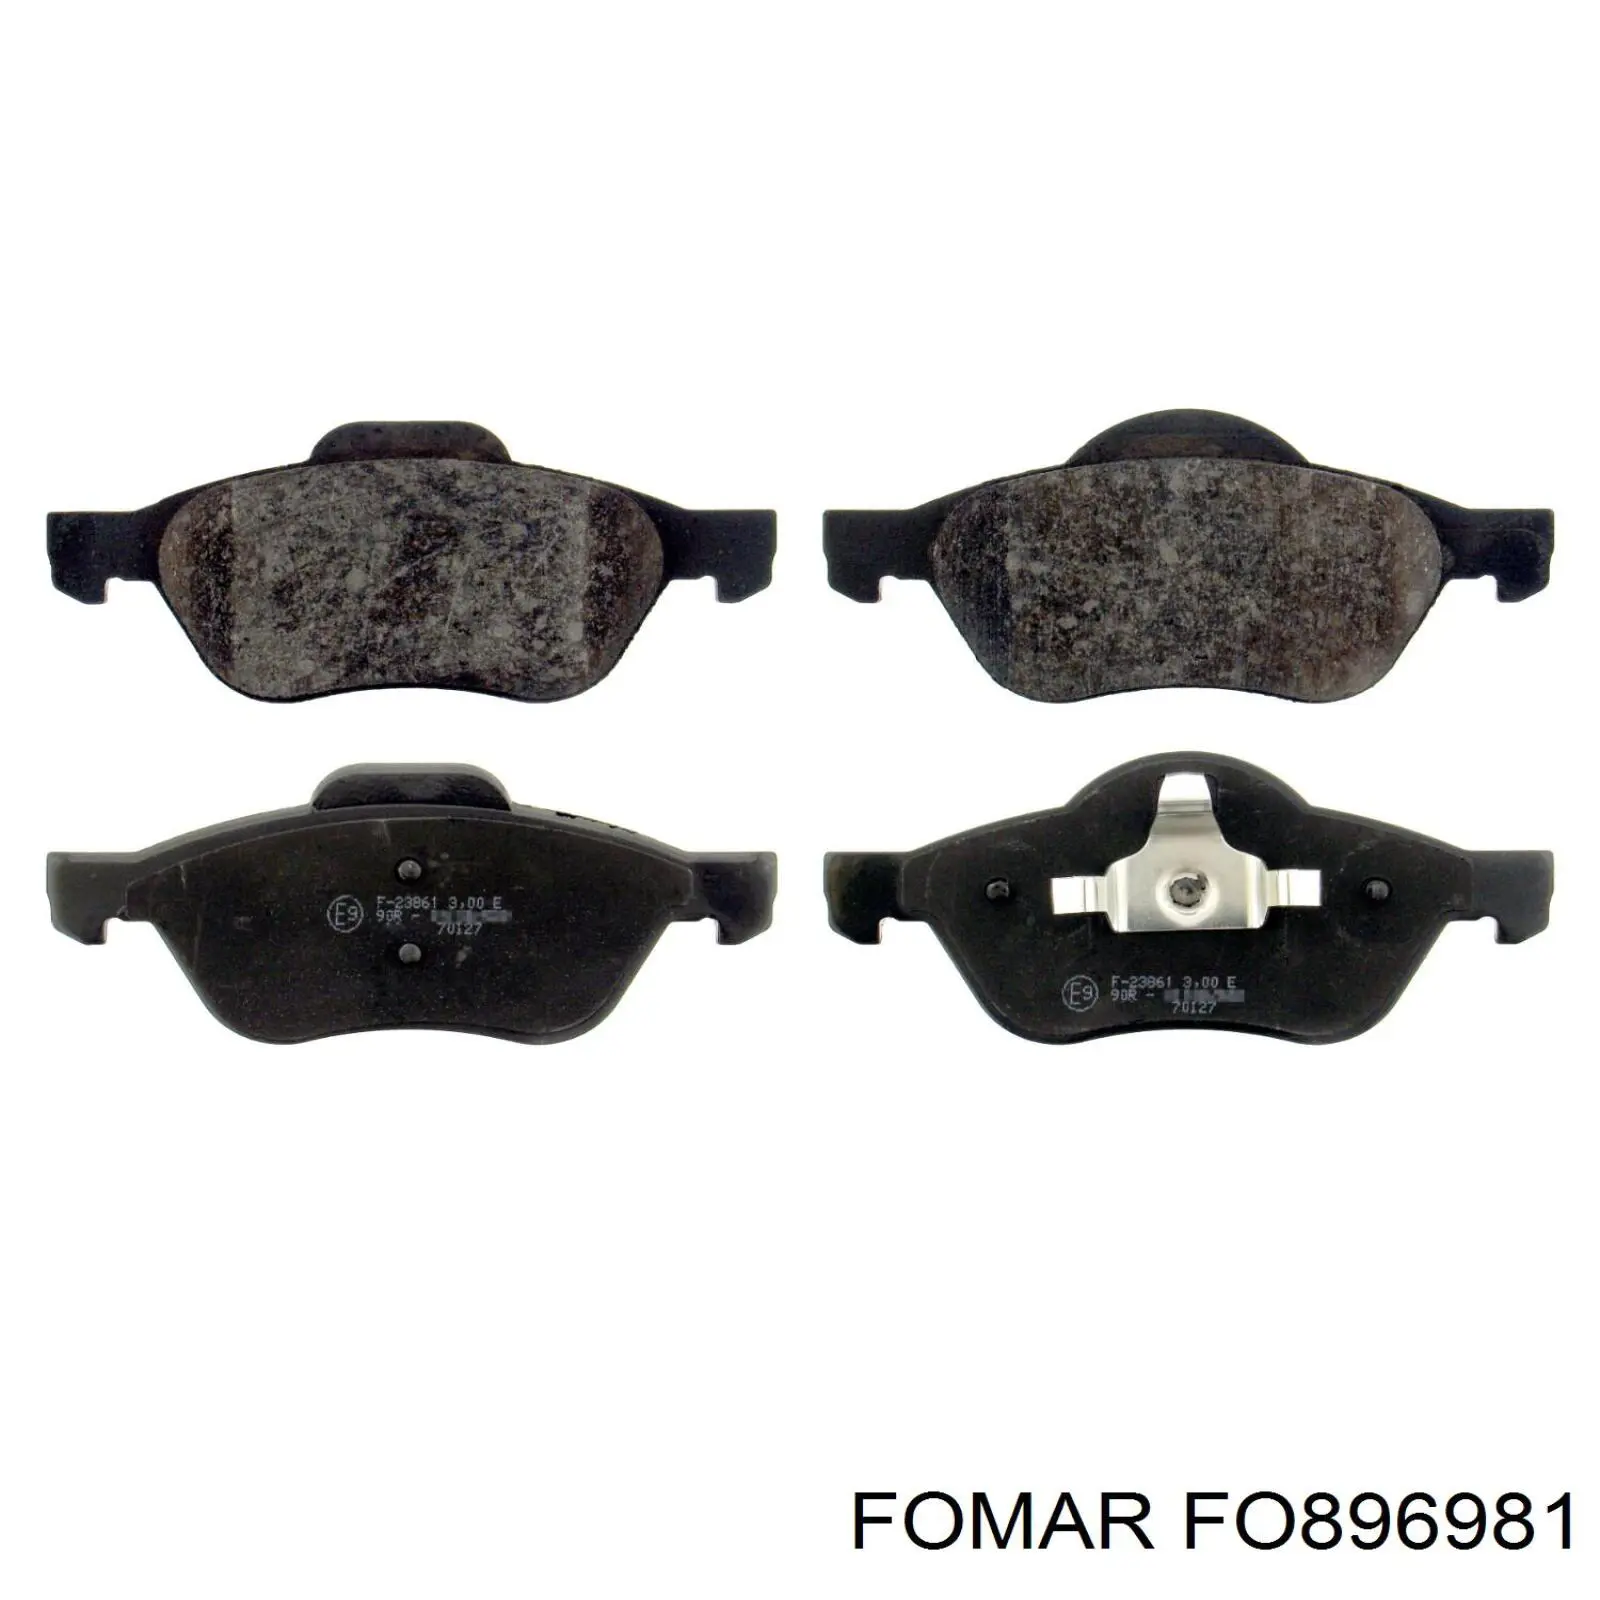 FO 896981 Fomar Roulunds колодки тормозные передние дисковые